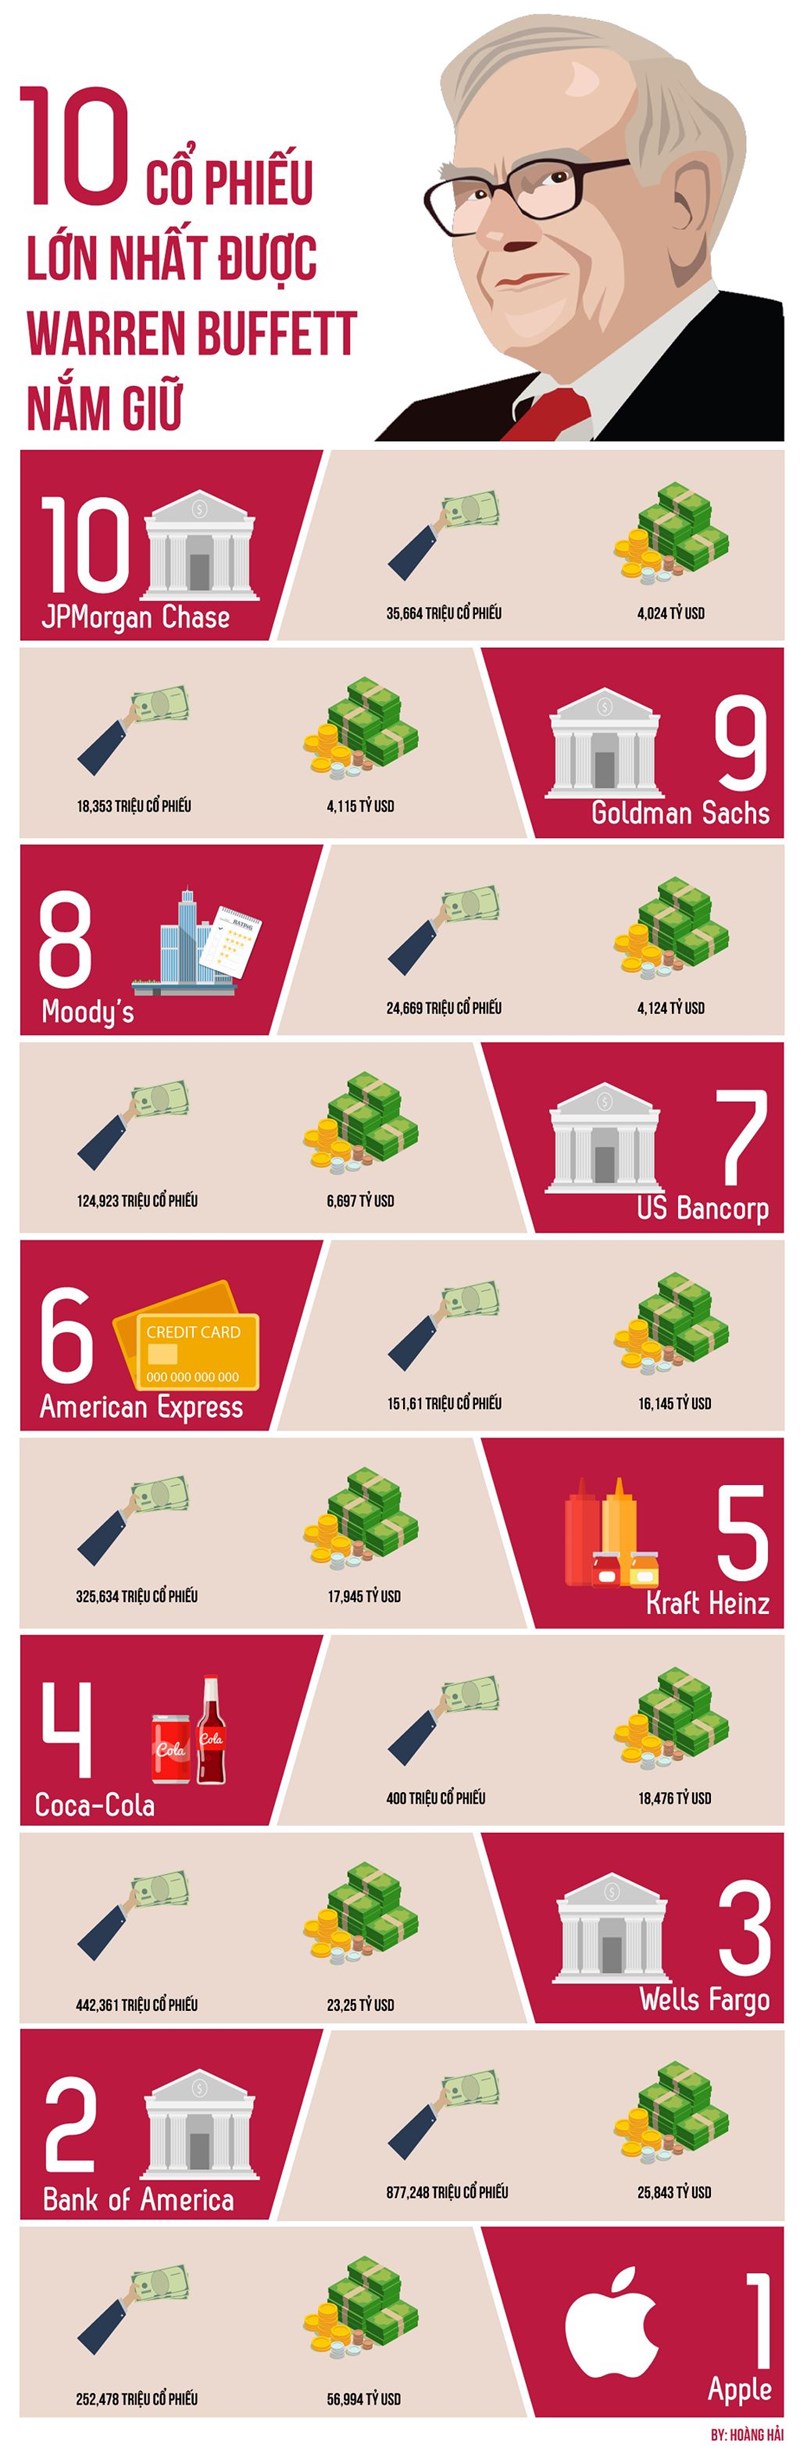 [Infographic] 10 cổ phiếu lớn nhất đang được Warrent Buffett nắm giữ - Ảnh 1